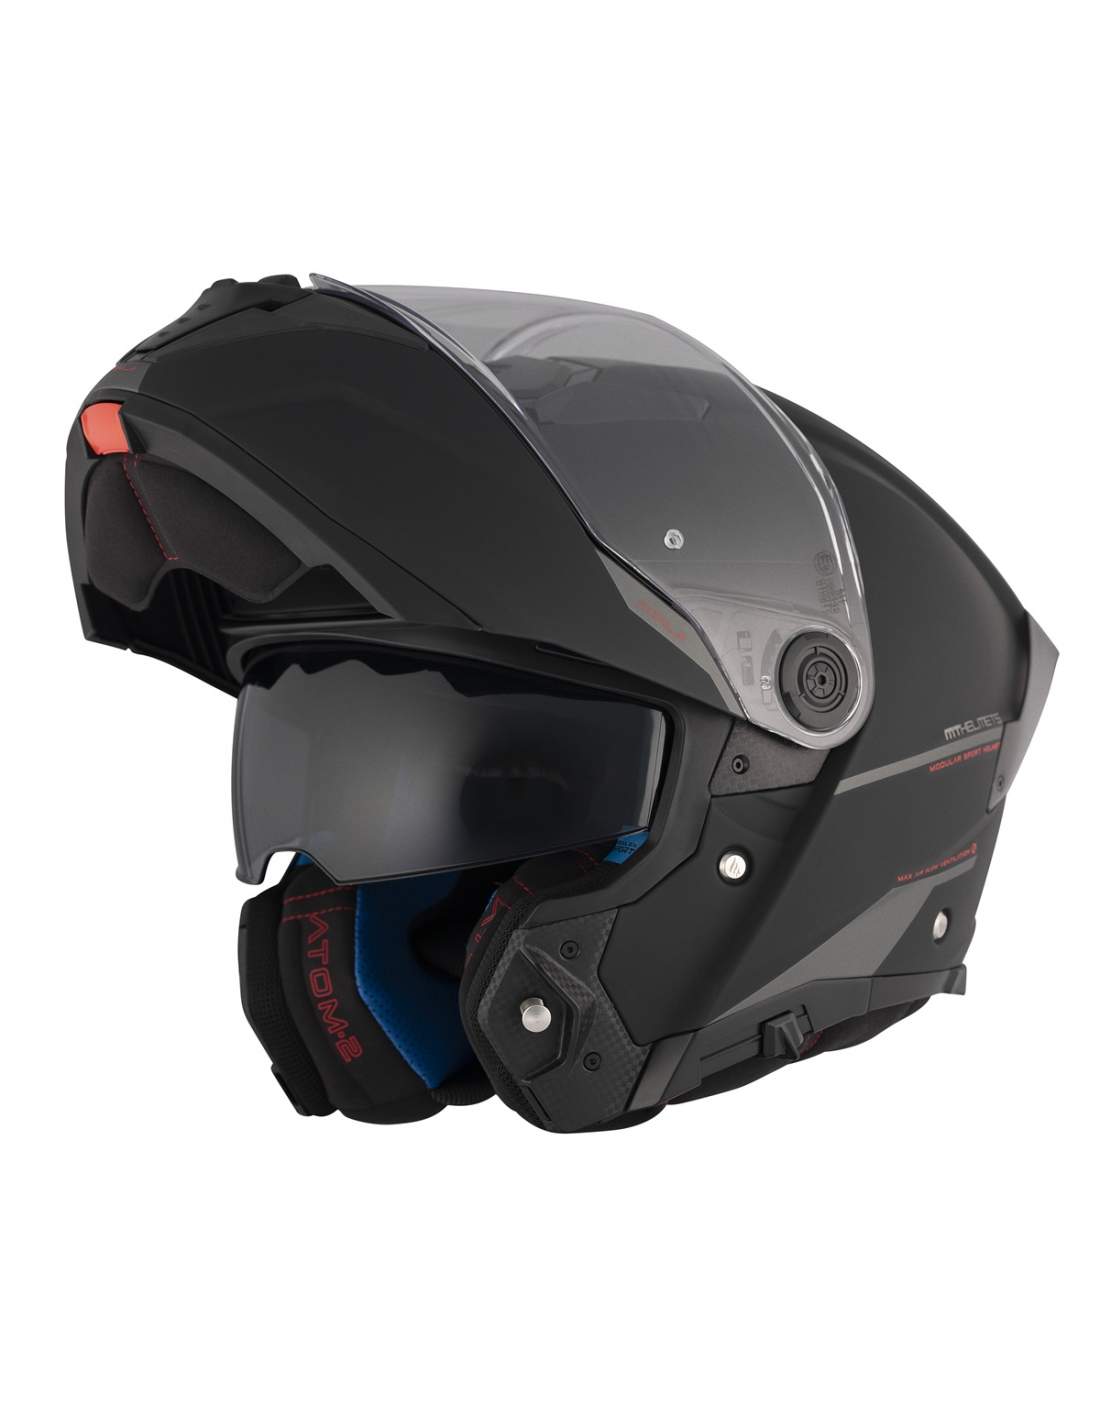 Visera plegable de doble casco casco moto motor completo de la